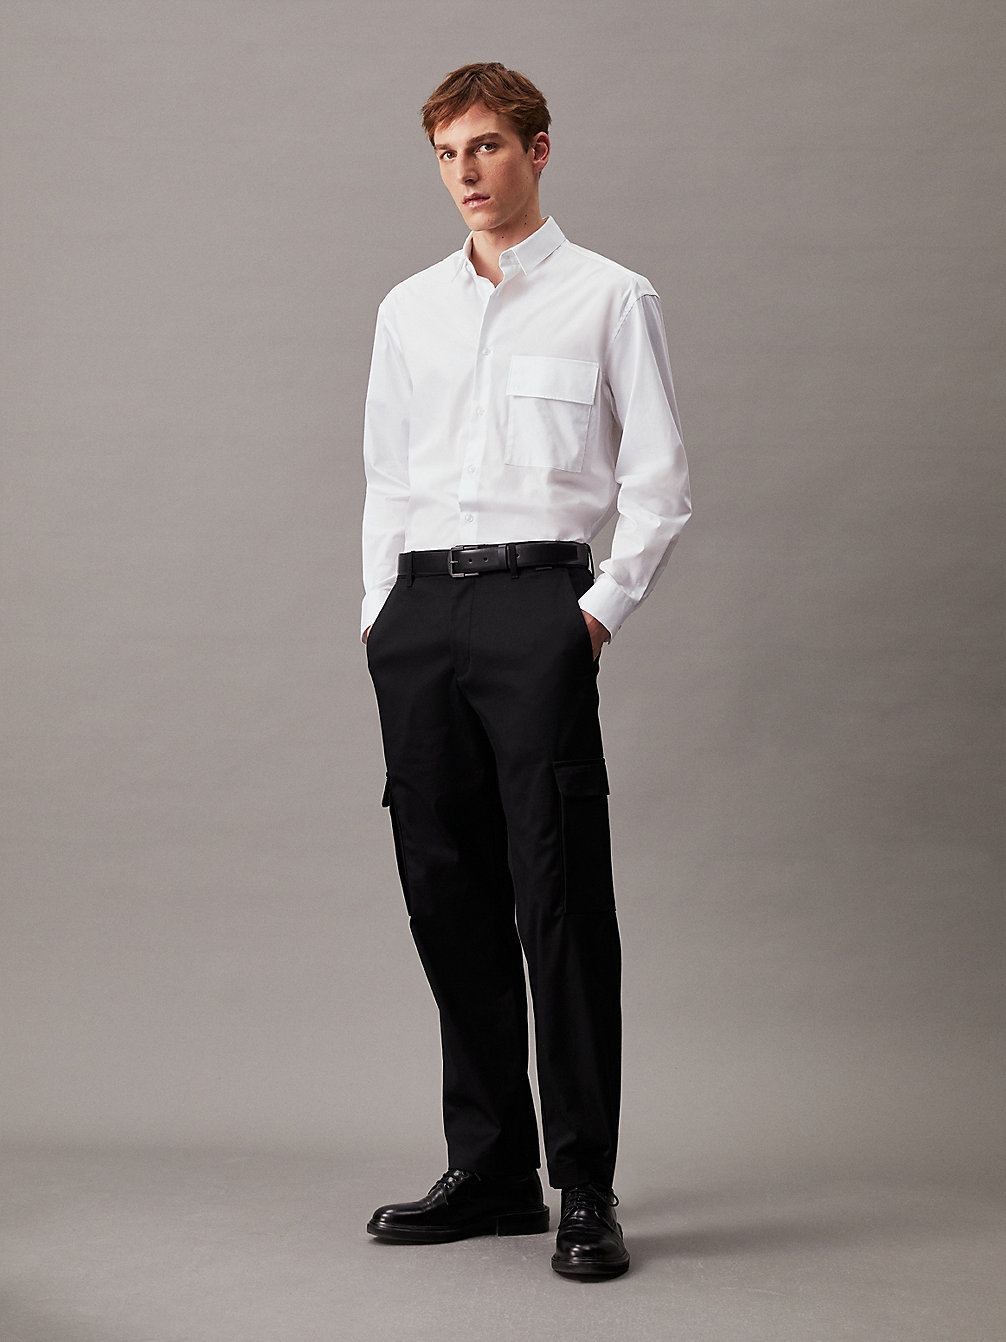 BRIGHT WHITE > Swobodna Koszula Z Popeliny Ze Stretchem > undefined Mężczyźni - Calvin Klein